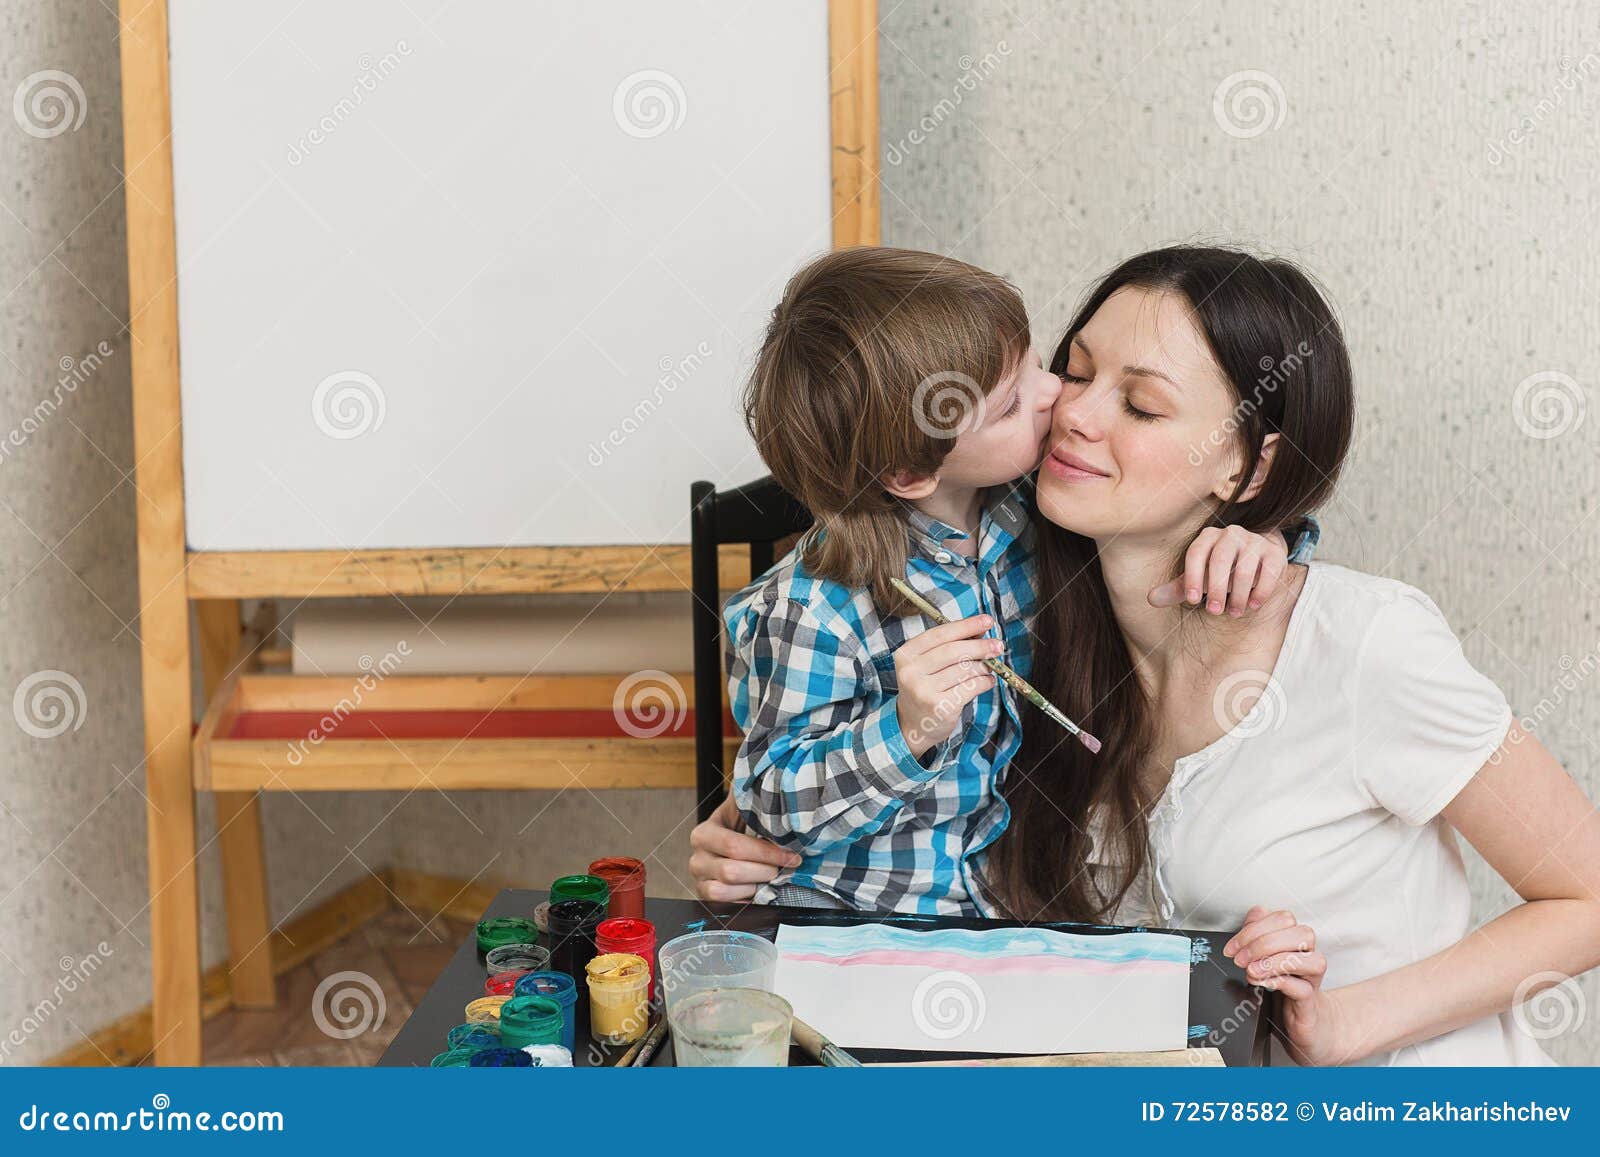 Мамки обучают русское. Мама поучает сына. Мама научила сына. Красивая мама учит сына. Мать научила сына и дочь.